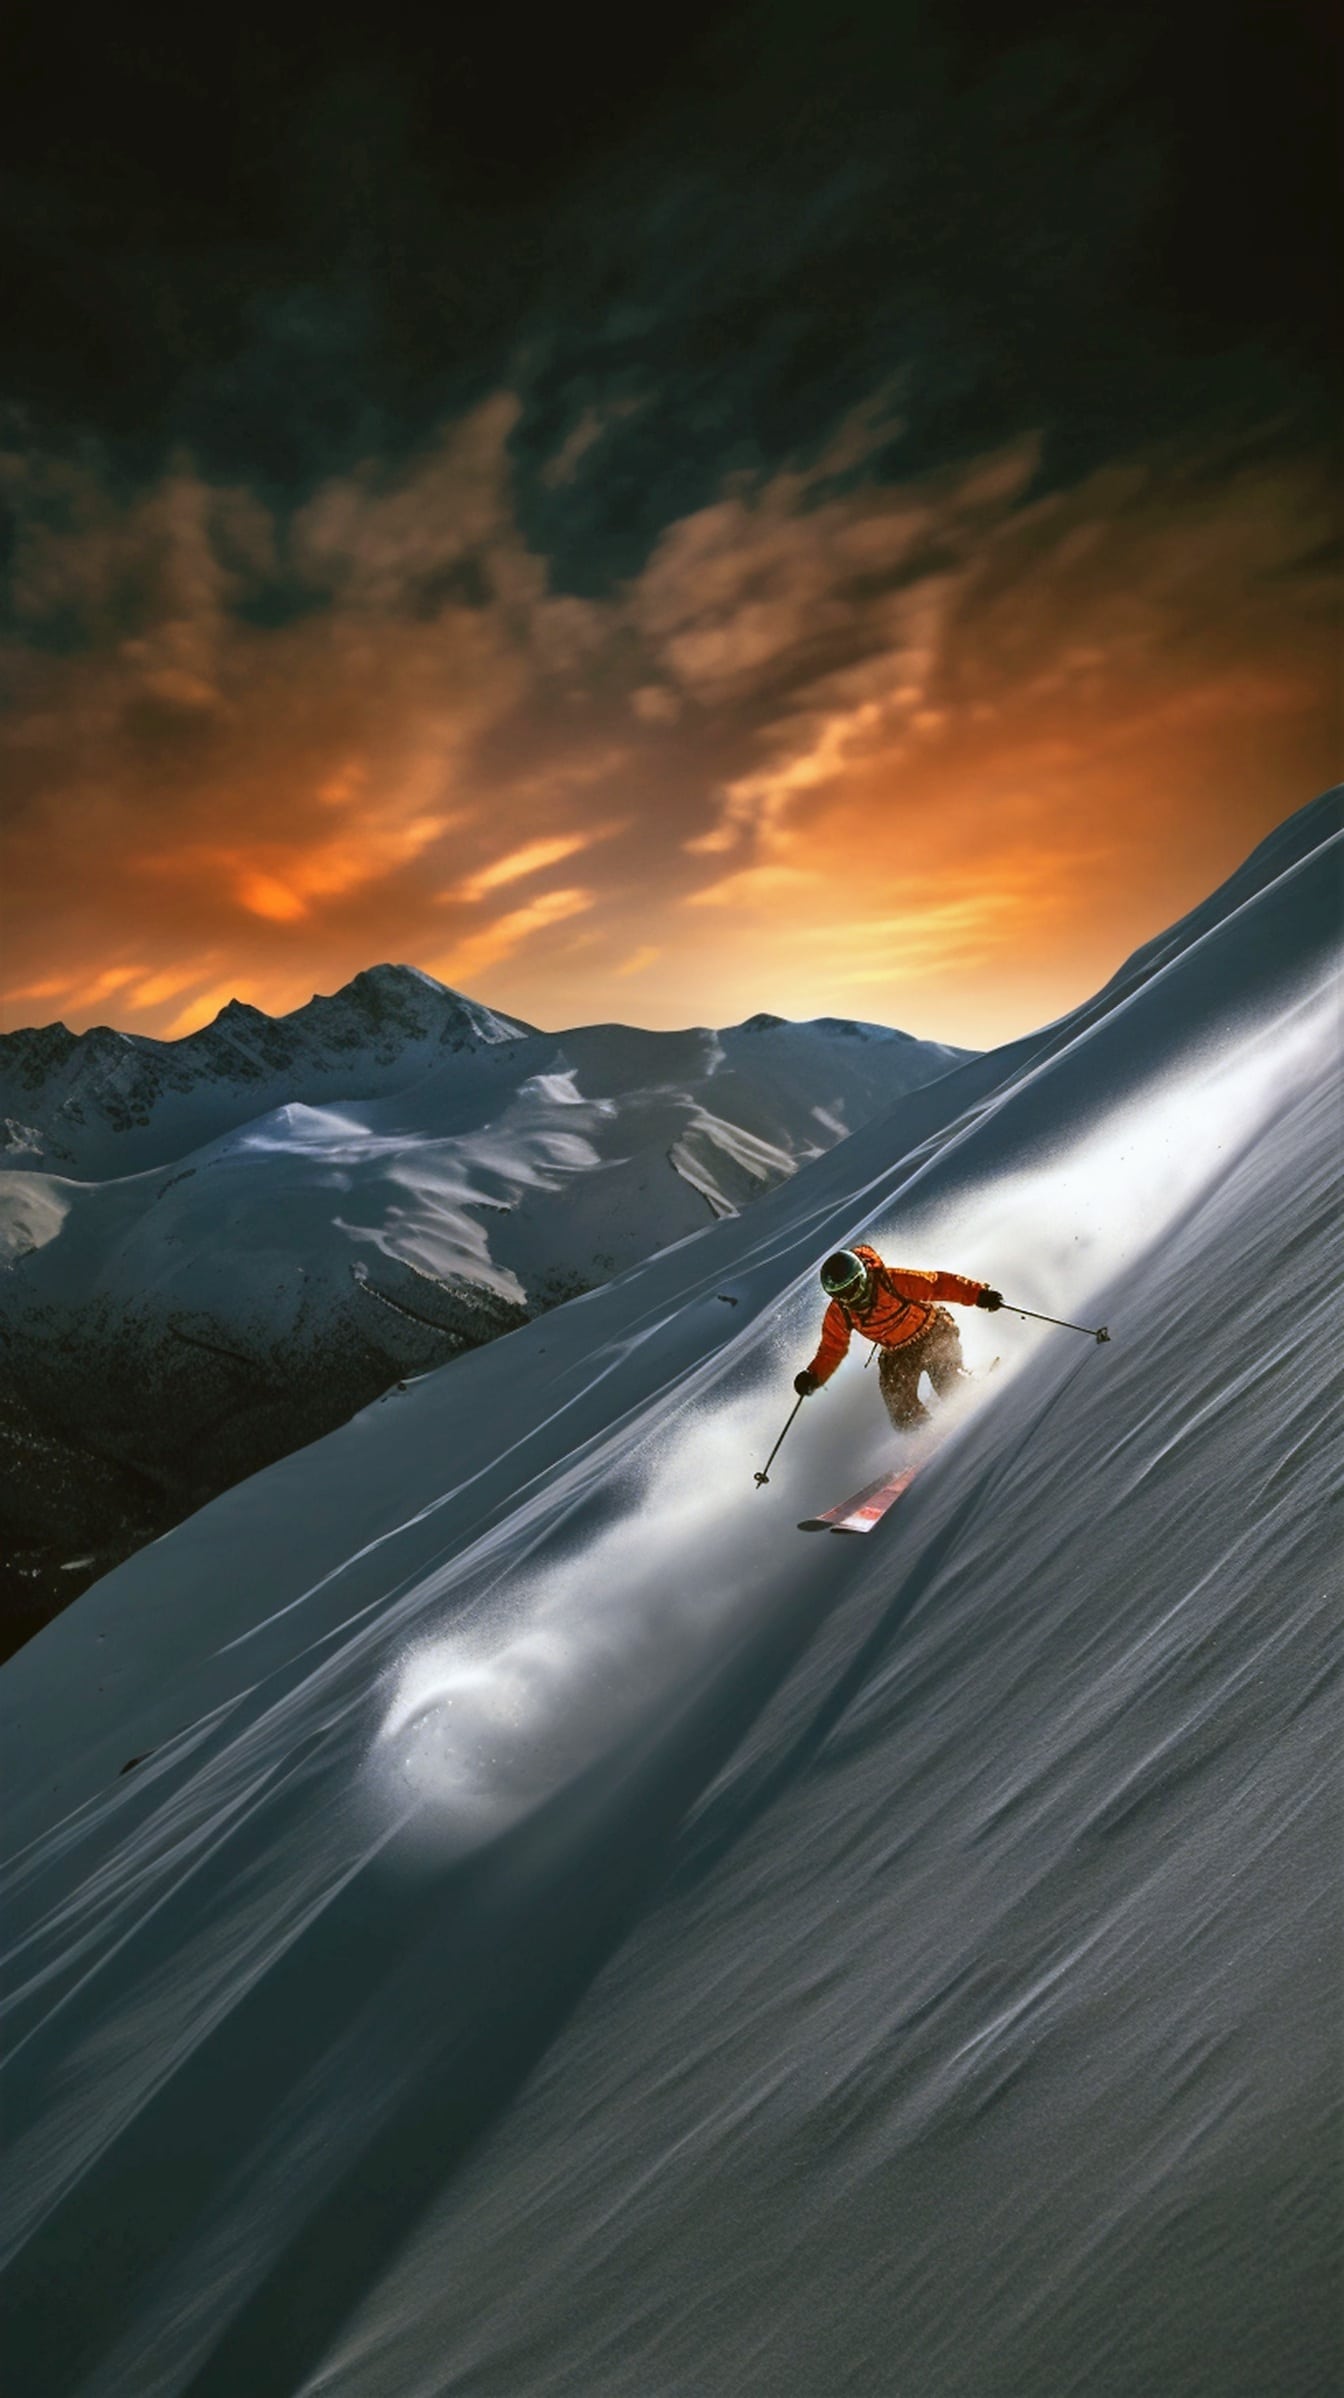 Skieur extrême skiant sur une pente enneigée au coucher du soleil majestueux